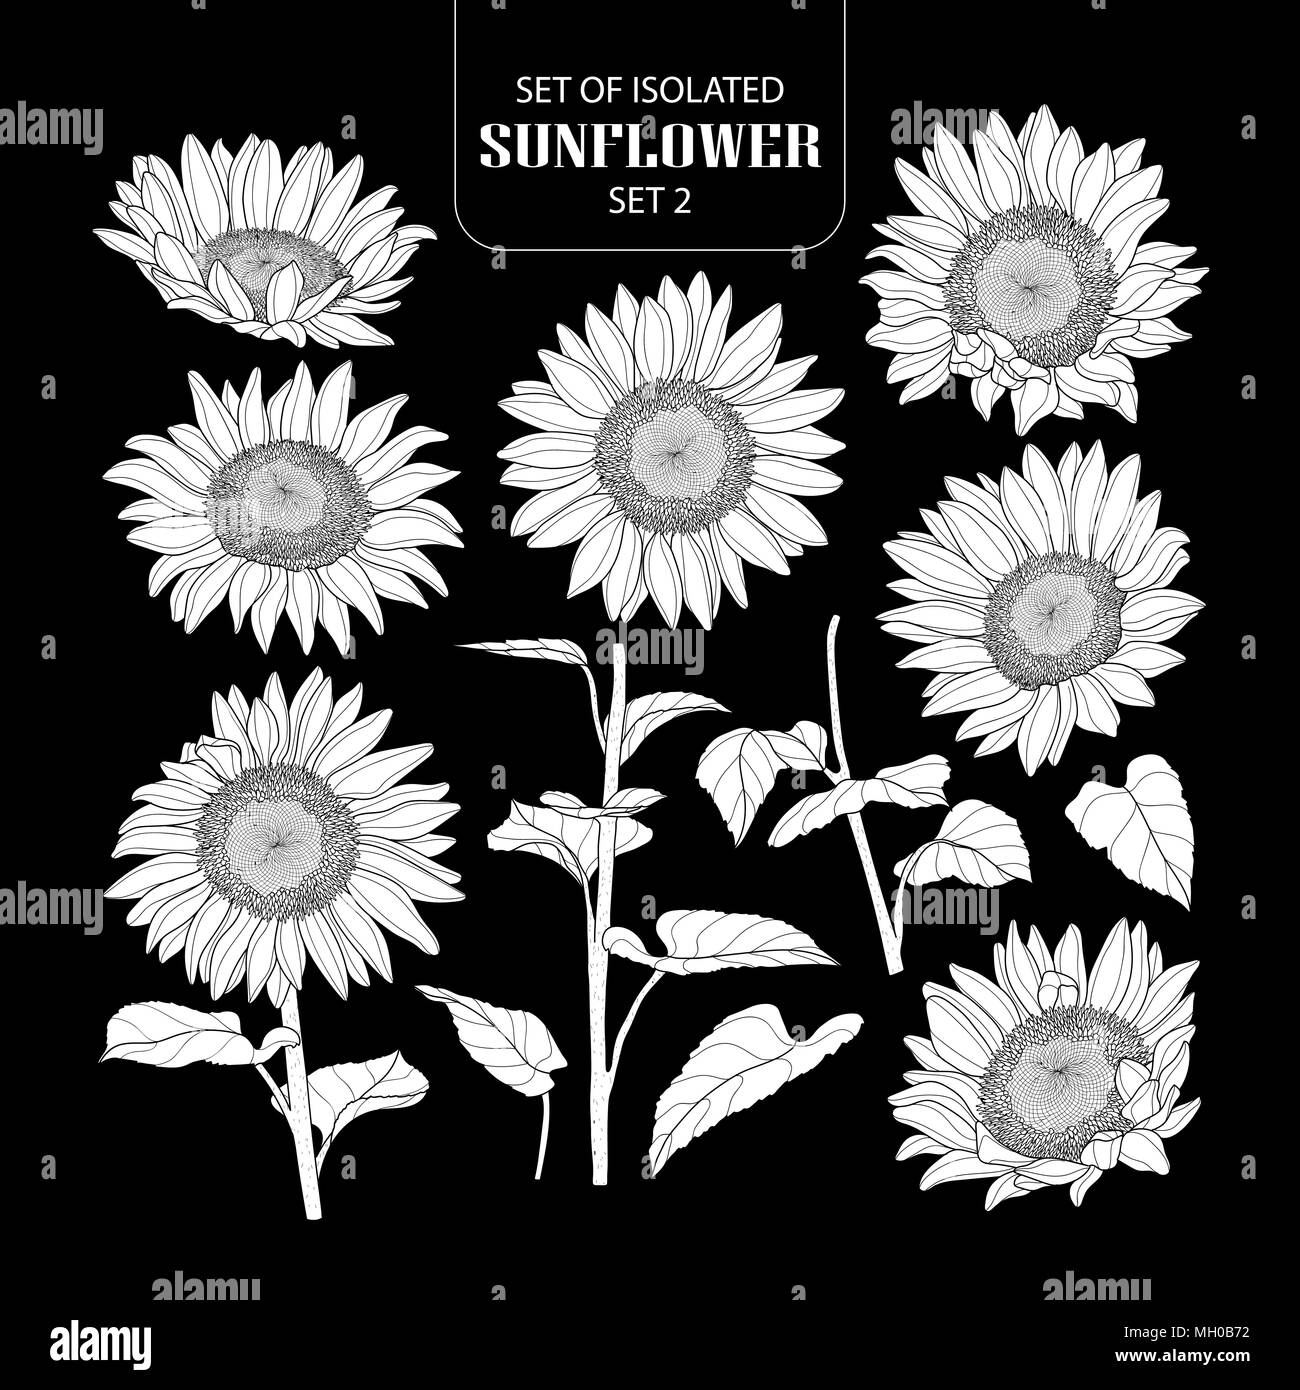 Eingestellt von isolierten weißen silhouette Sonnenblumen Set 2. Süße Hand gezeichnet Vector Illustration in weißen Fläche ohne Umriss auf schwarzem Hintergrund. Stock Vektor